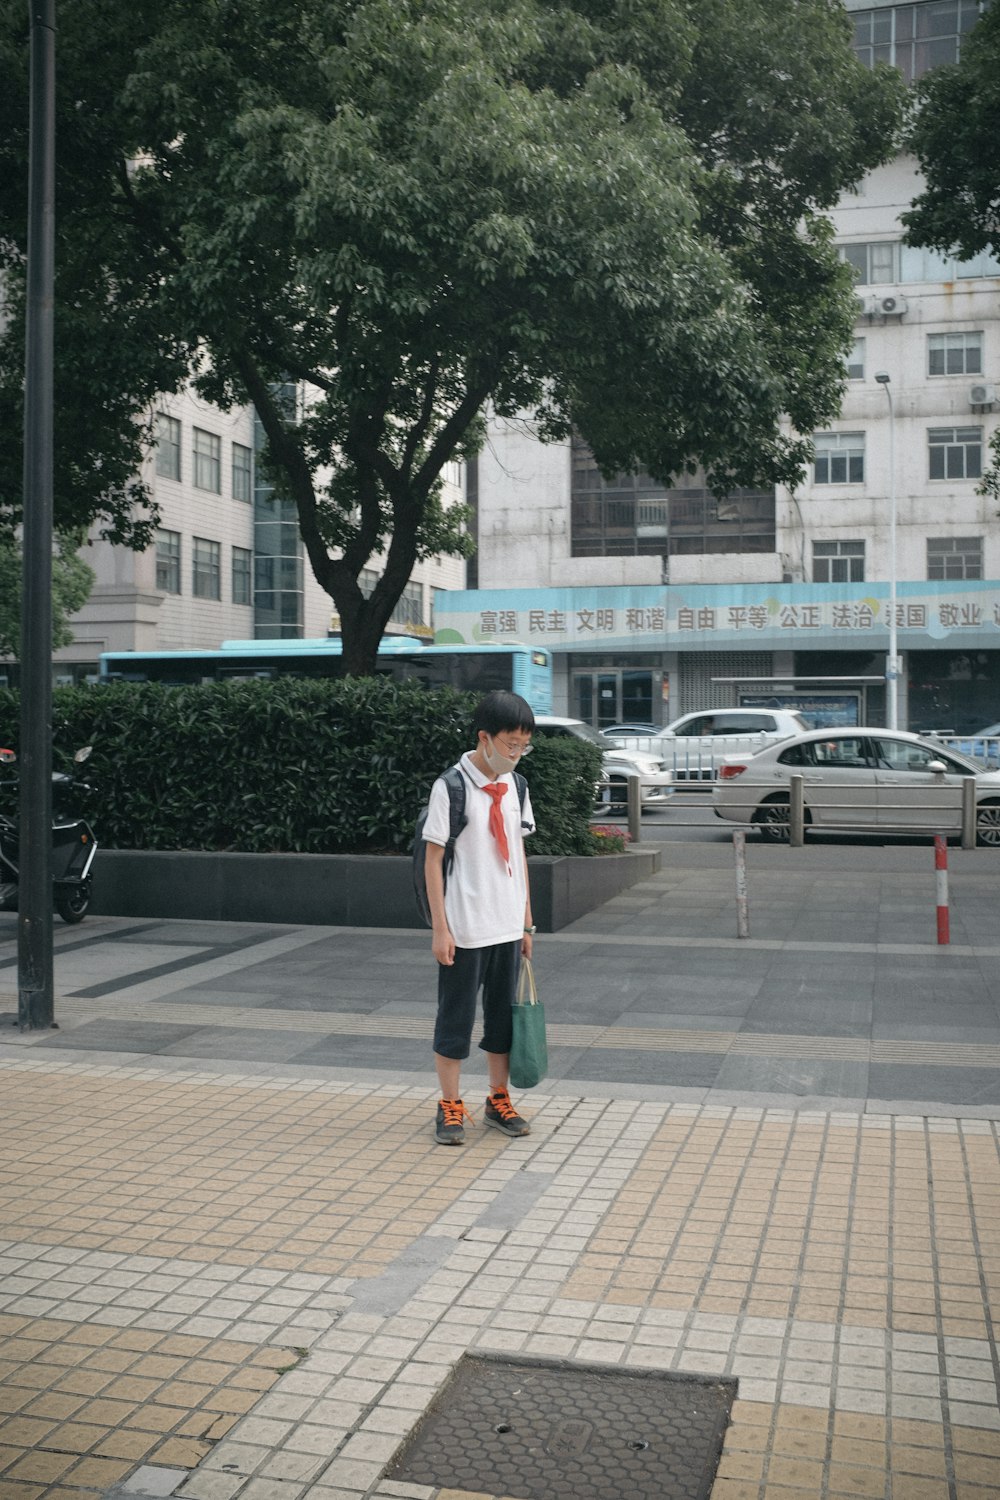 Frau im weißen Langarmhemd tagsüber auf dem Bürgersteig stehend